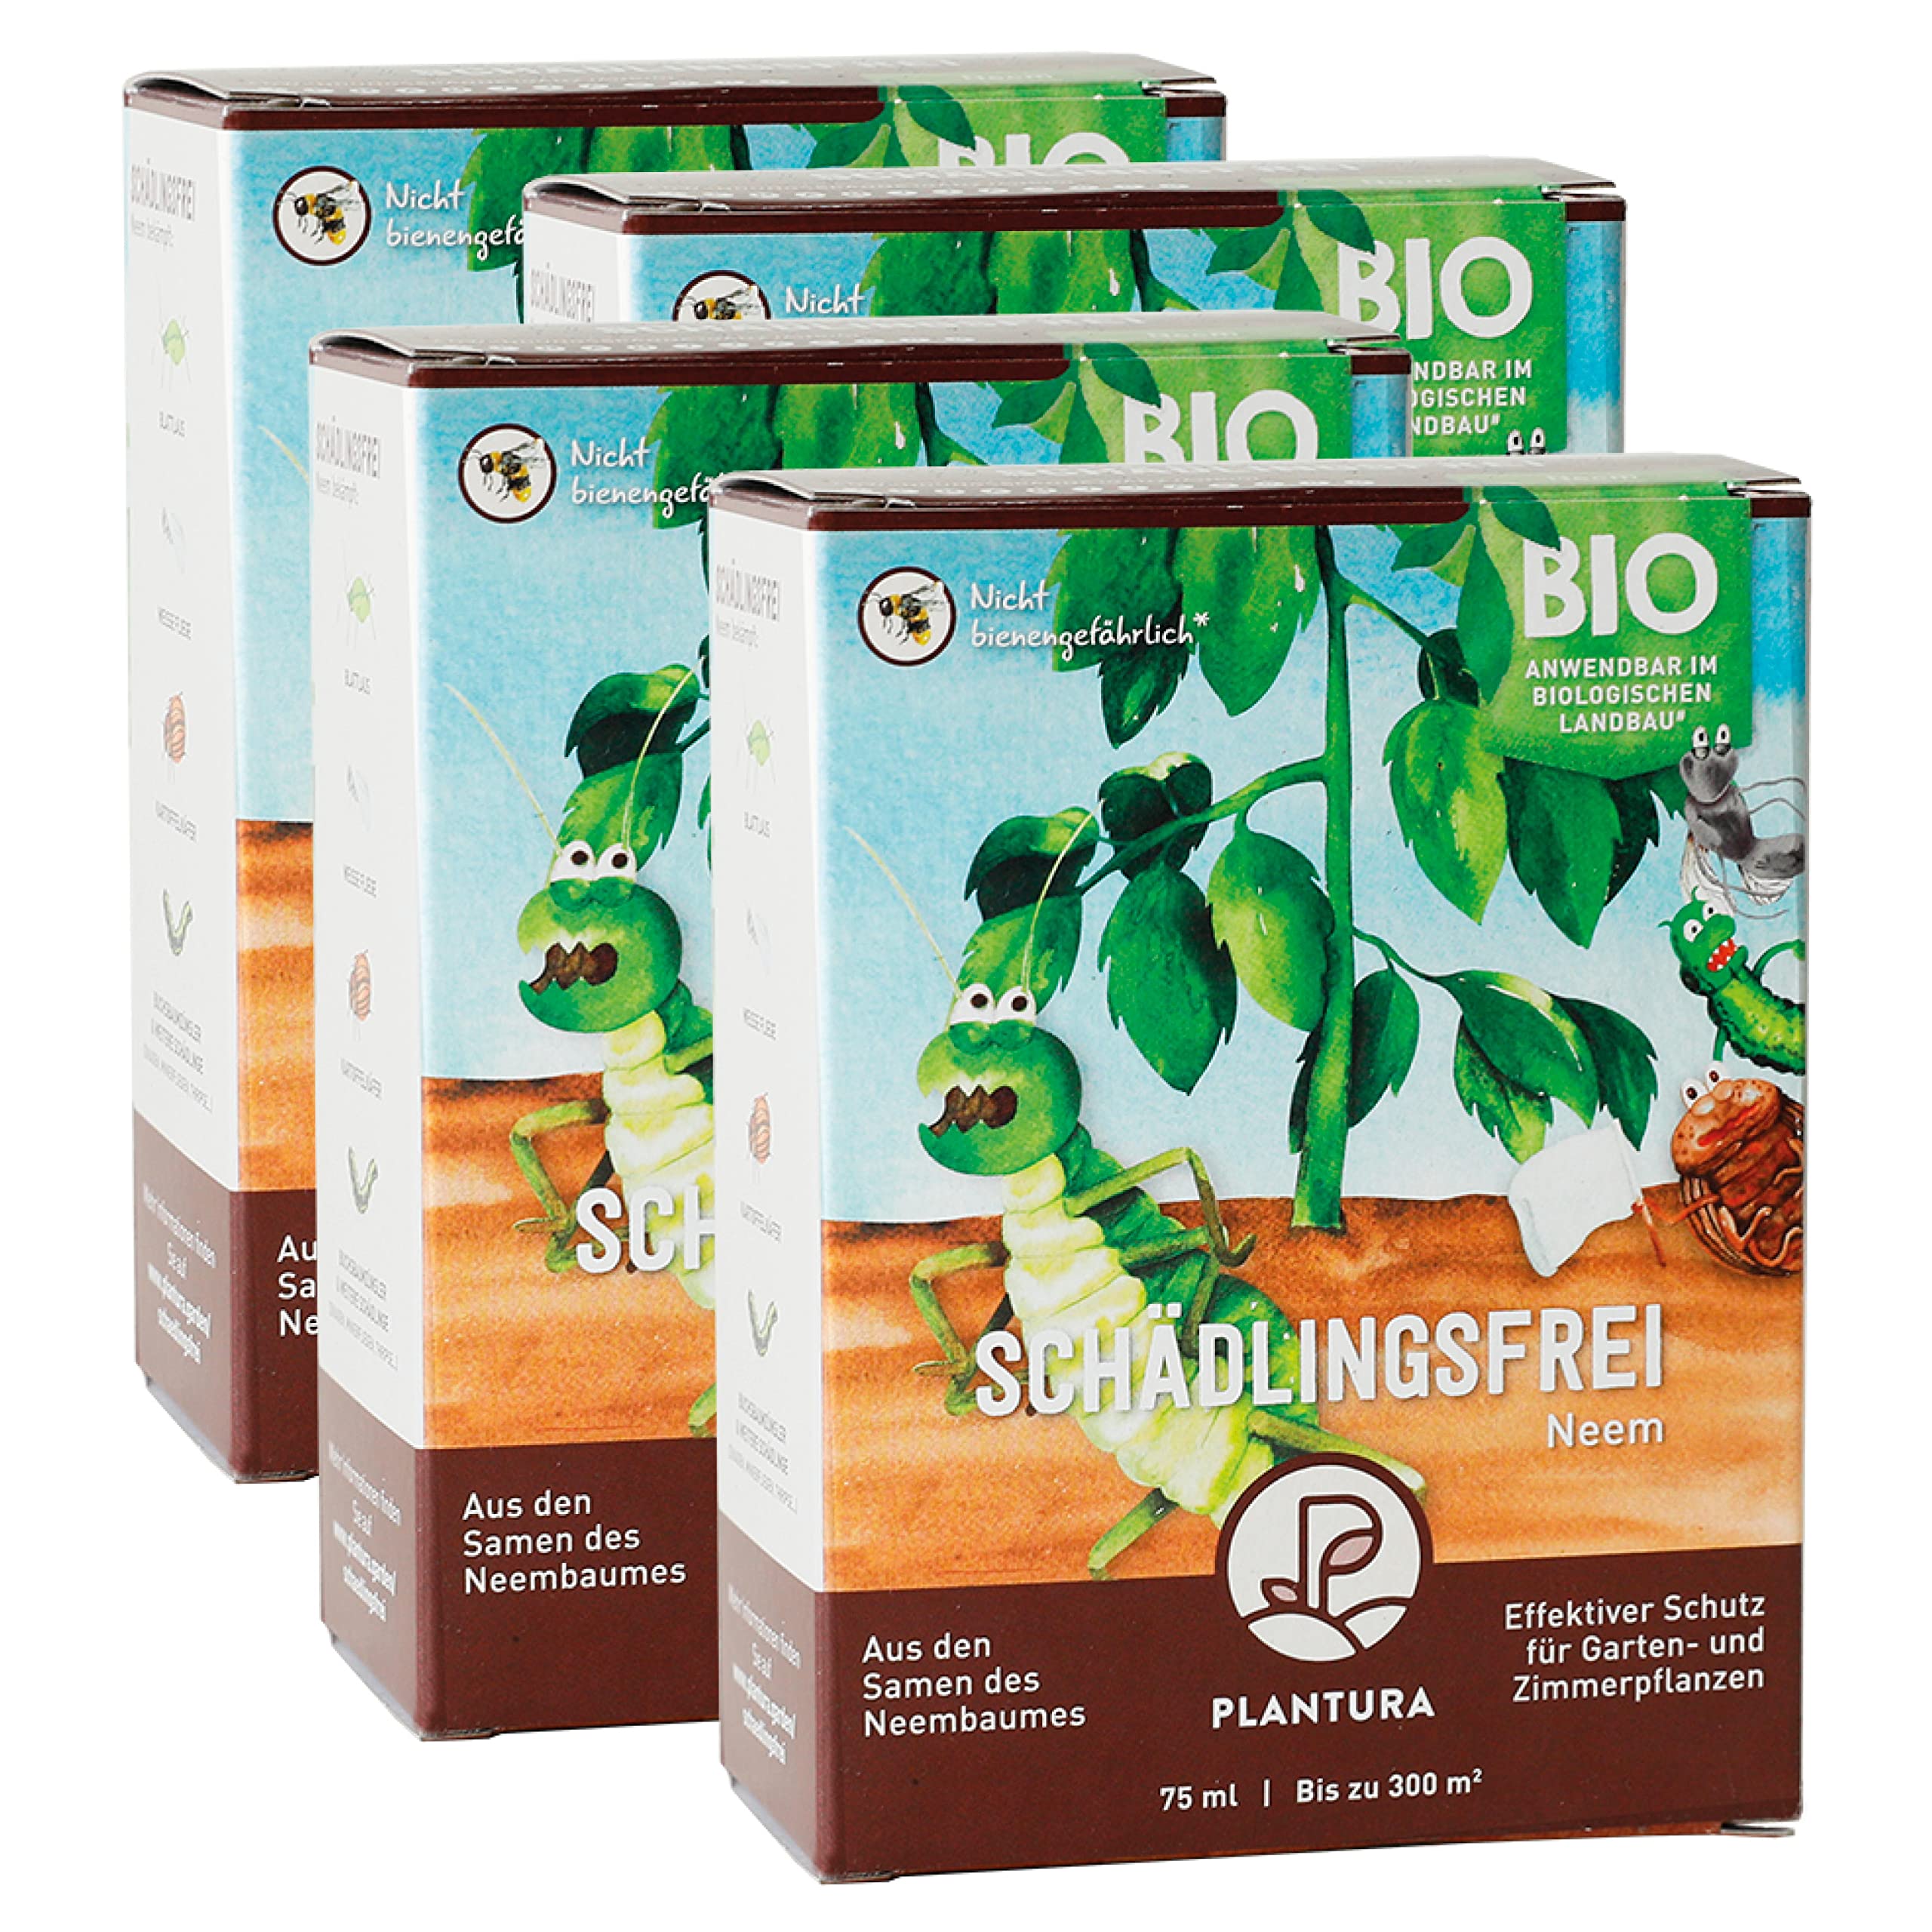 Plantura Bio-Schädlingsfrei Neem, effektive Schädlingsbekämpfung mit Neem, 300 ml